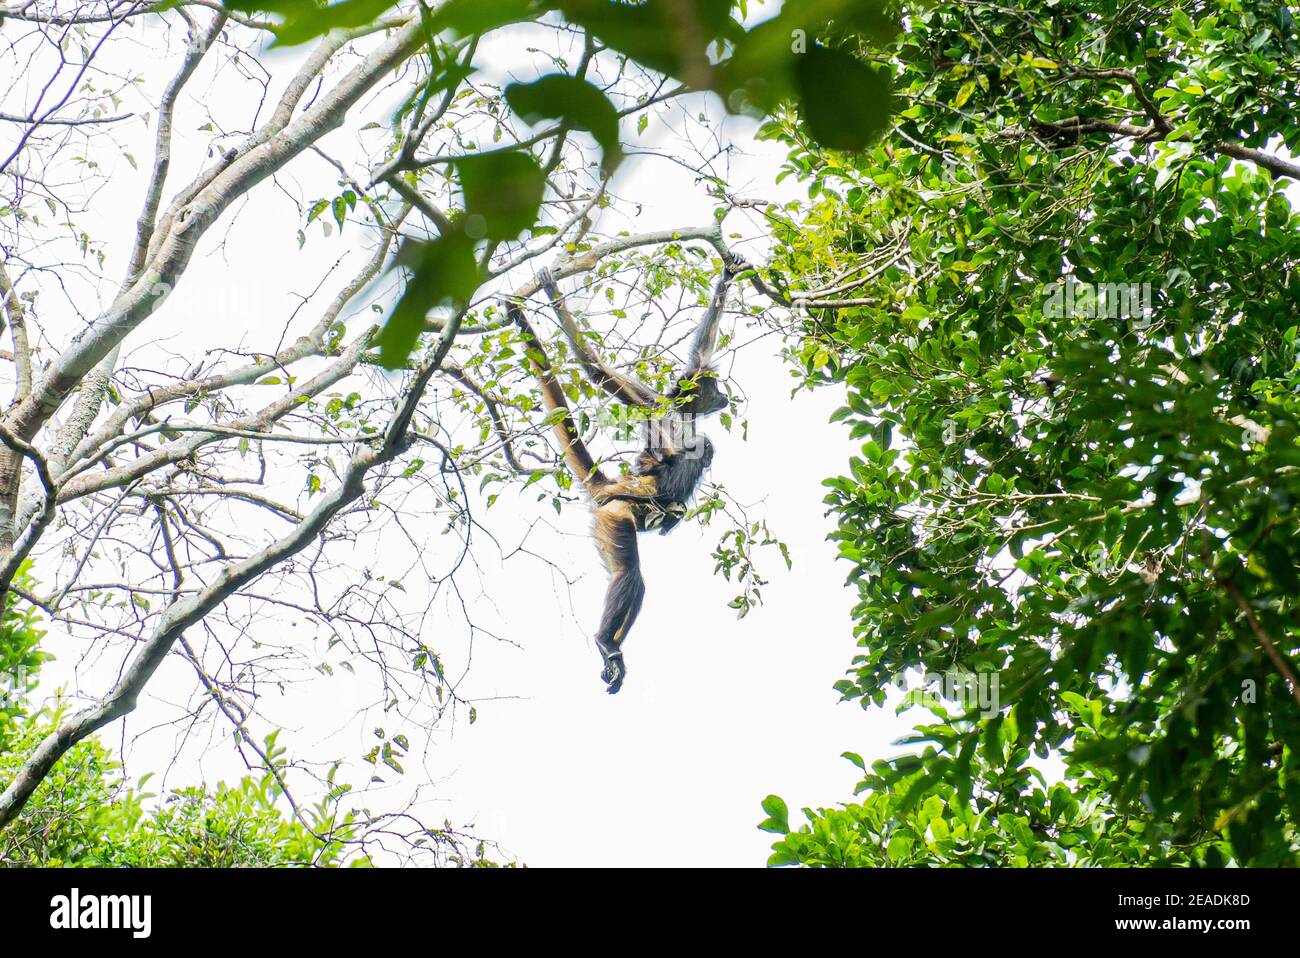 Araignée singe avec bébé (Ateles geoffroyi) escalade d'un arbre dans les ruines de Calakmul, Mexique Yucatan Banque D'Images